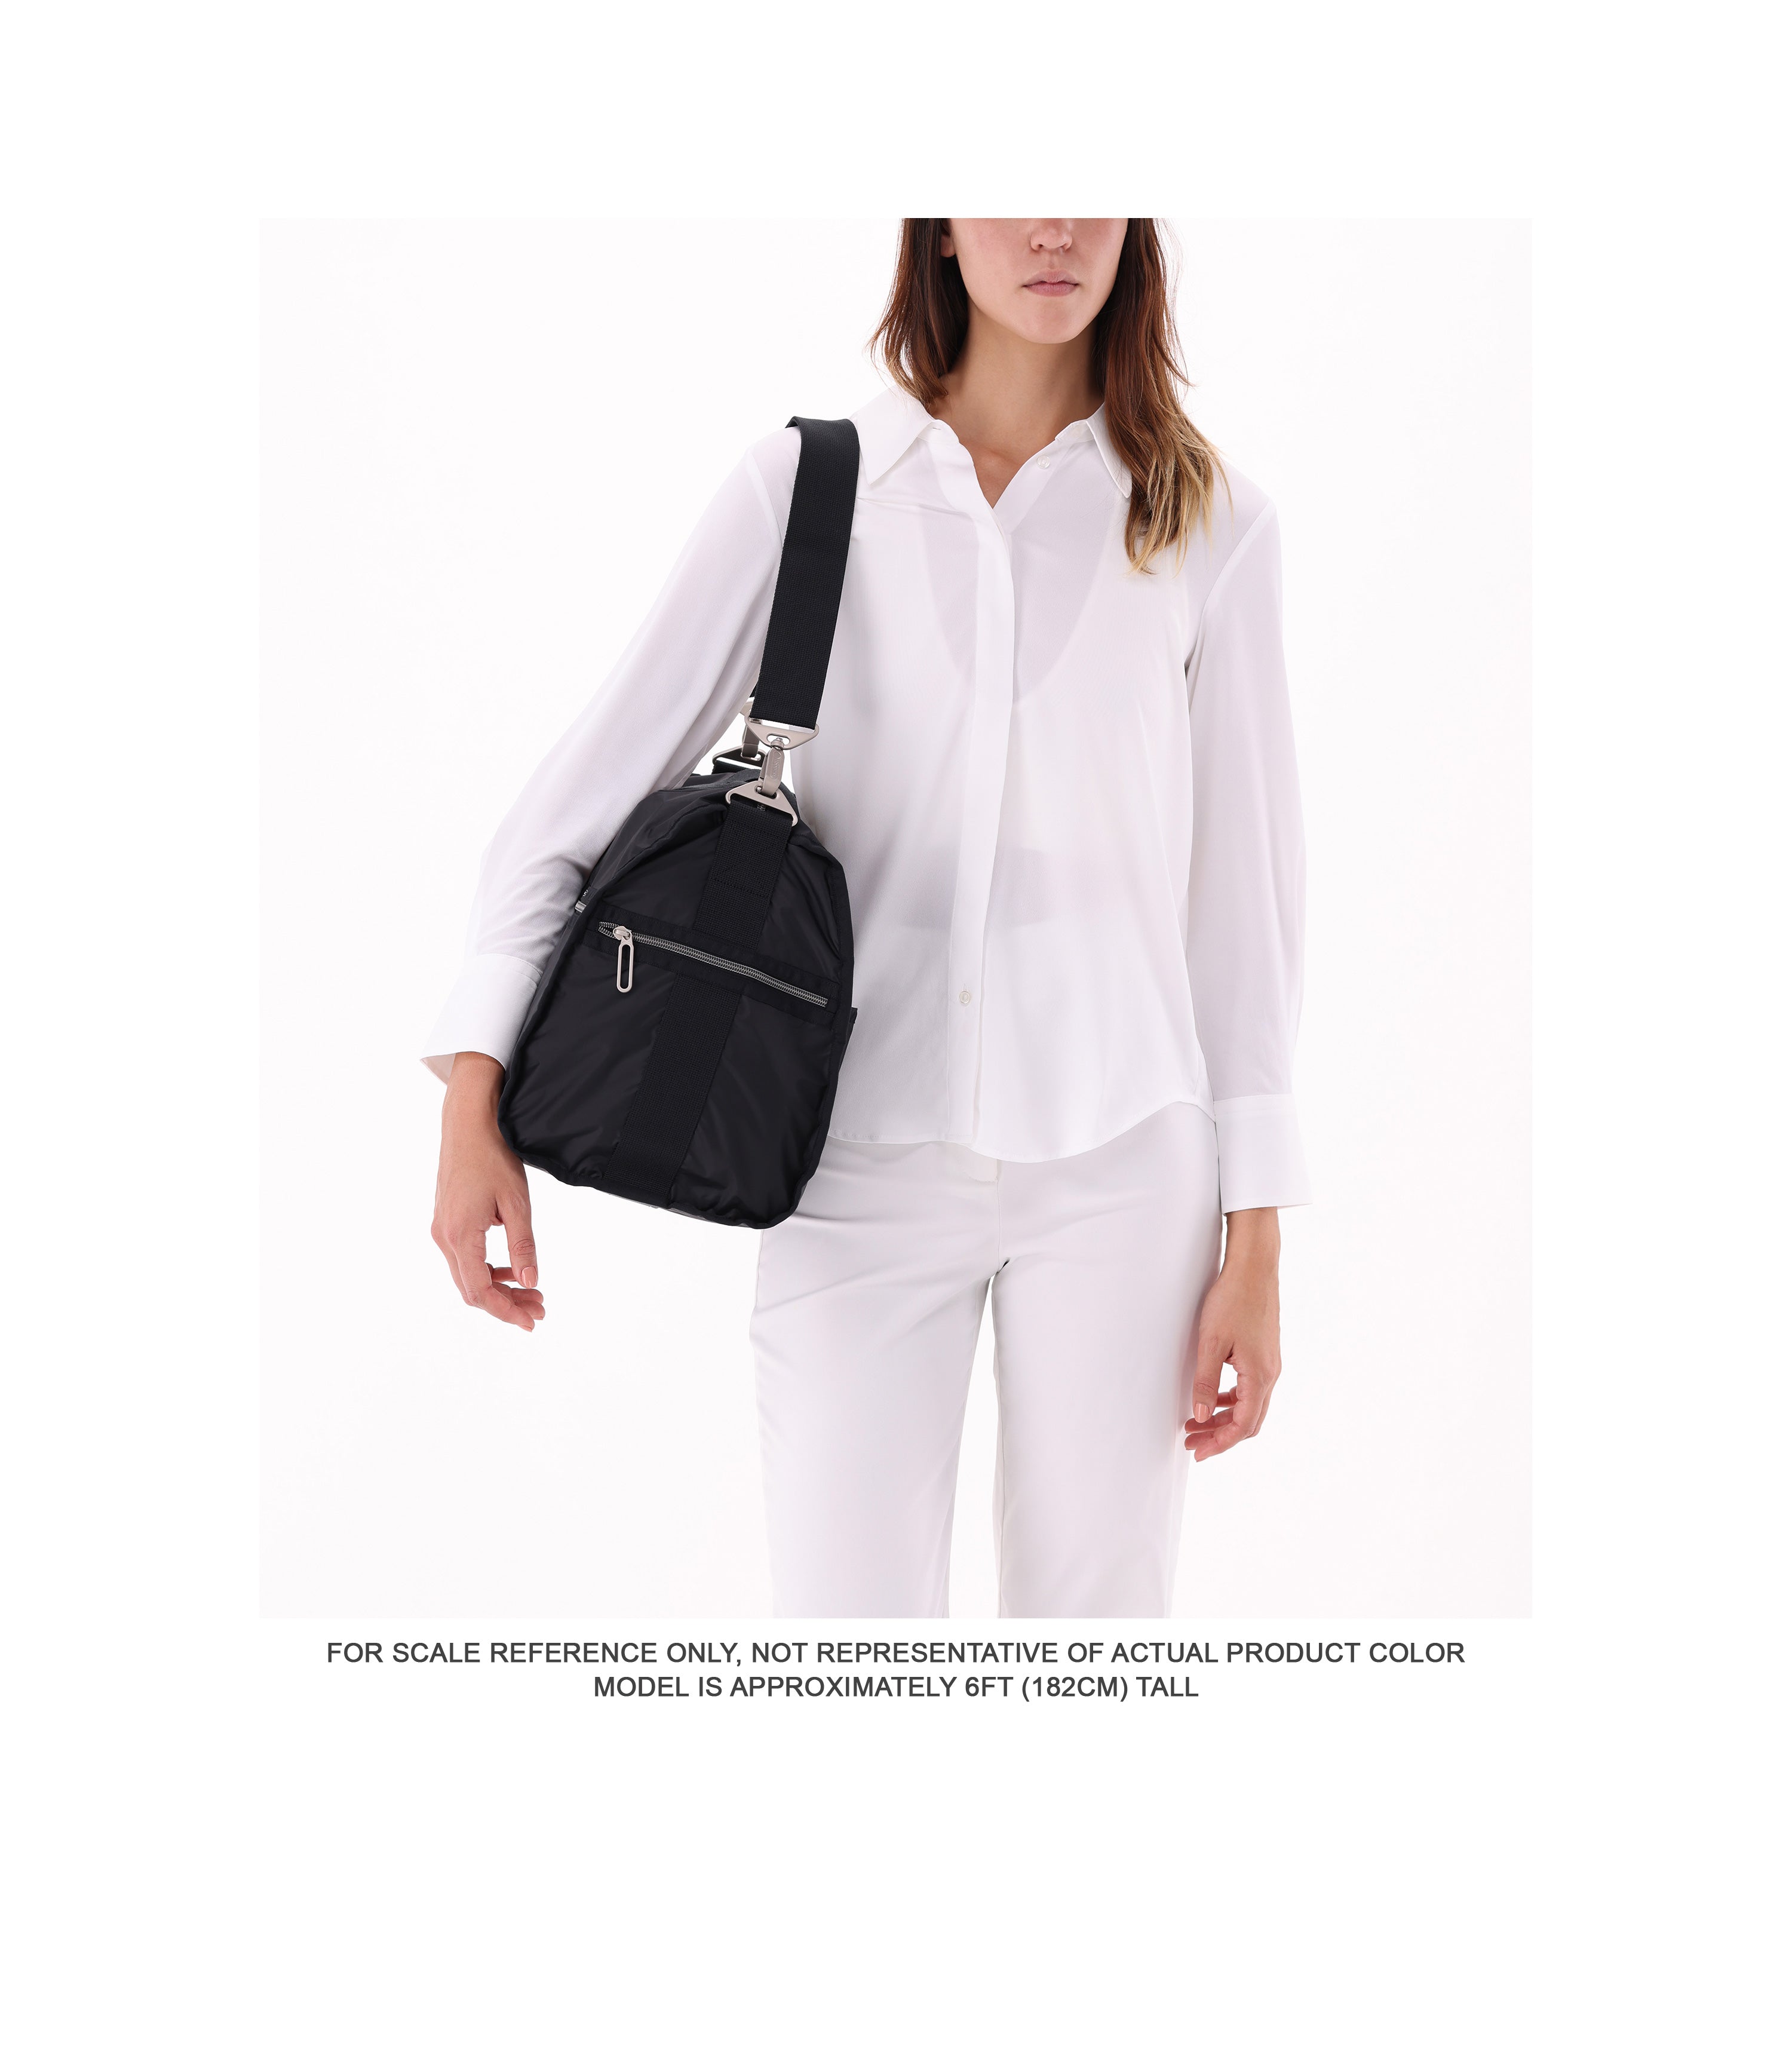 Essential Large Black Weekender Bag | LeSportsac